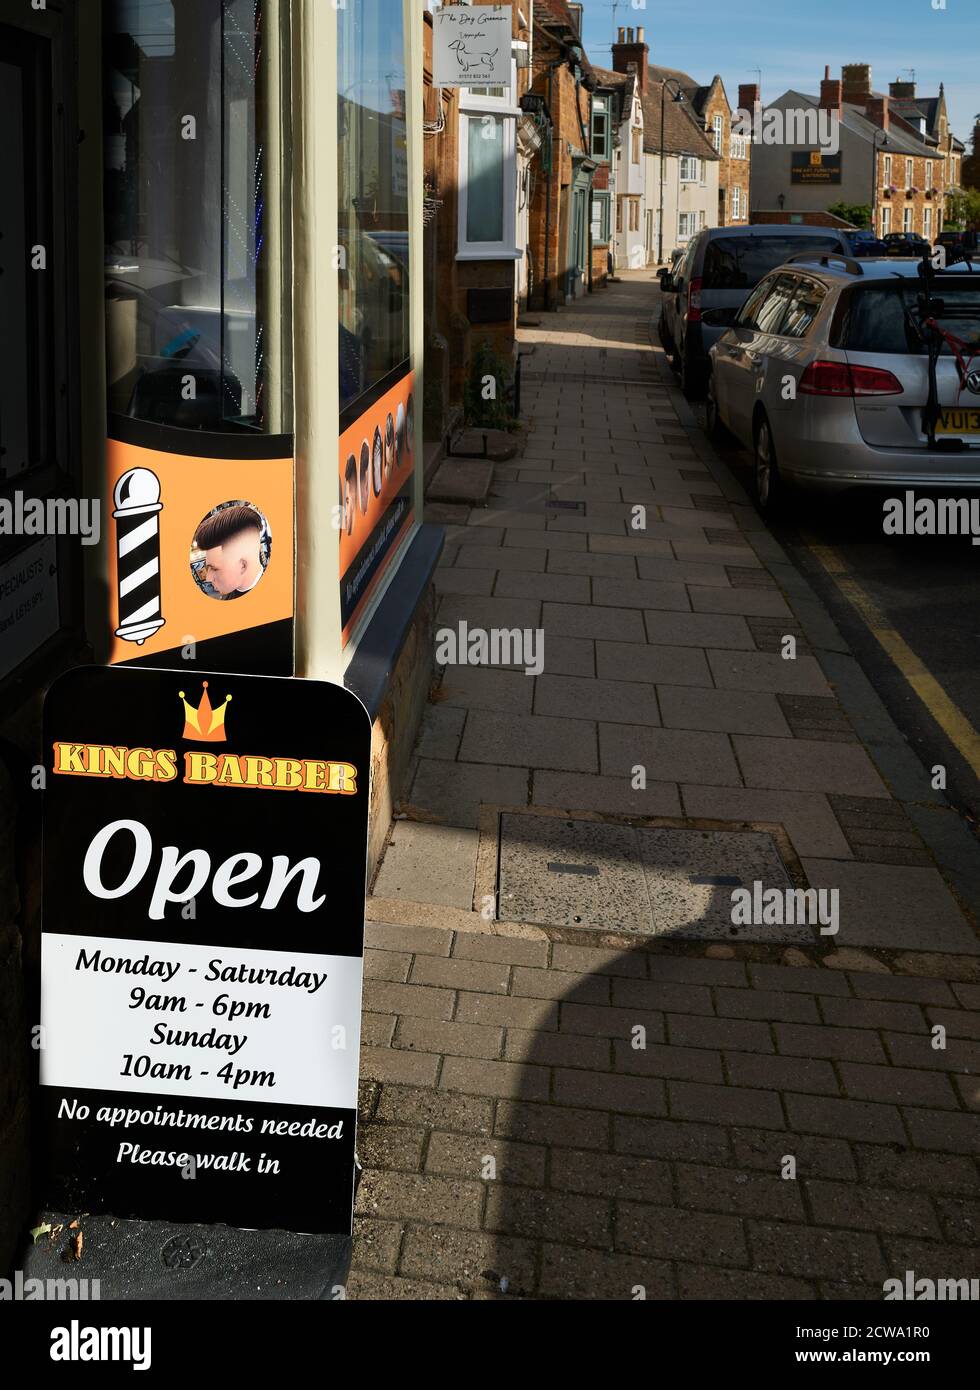 Un salon de coiffure est ouvert dans la ville marchande d'Uppingham, Rutland, en Angleterre, pendant l'épidémie du coronavirus, septembre 2020. Banque D'Images